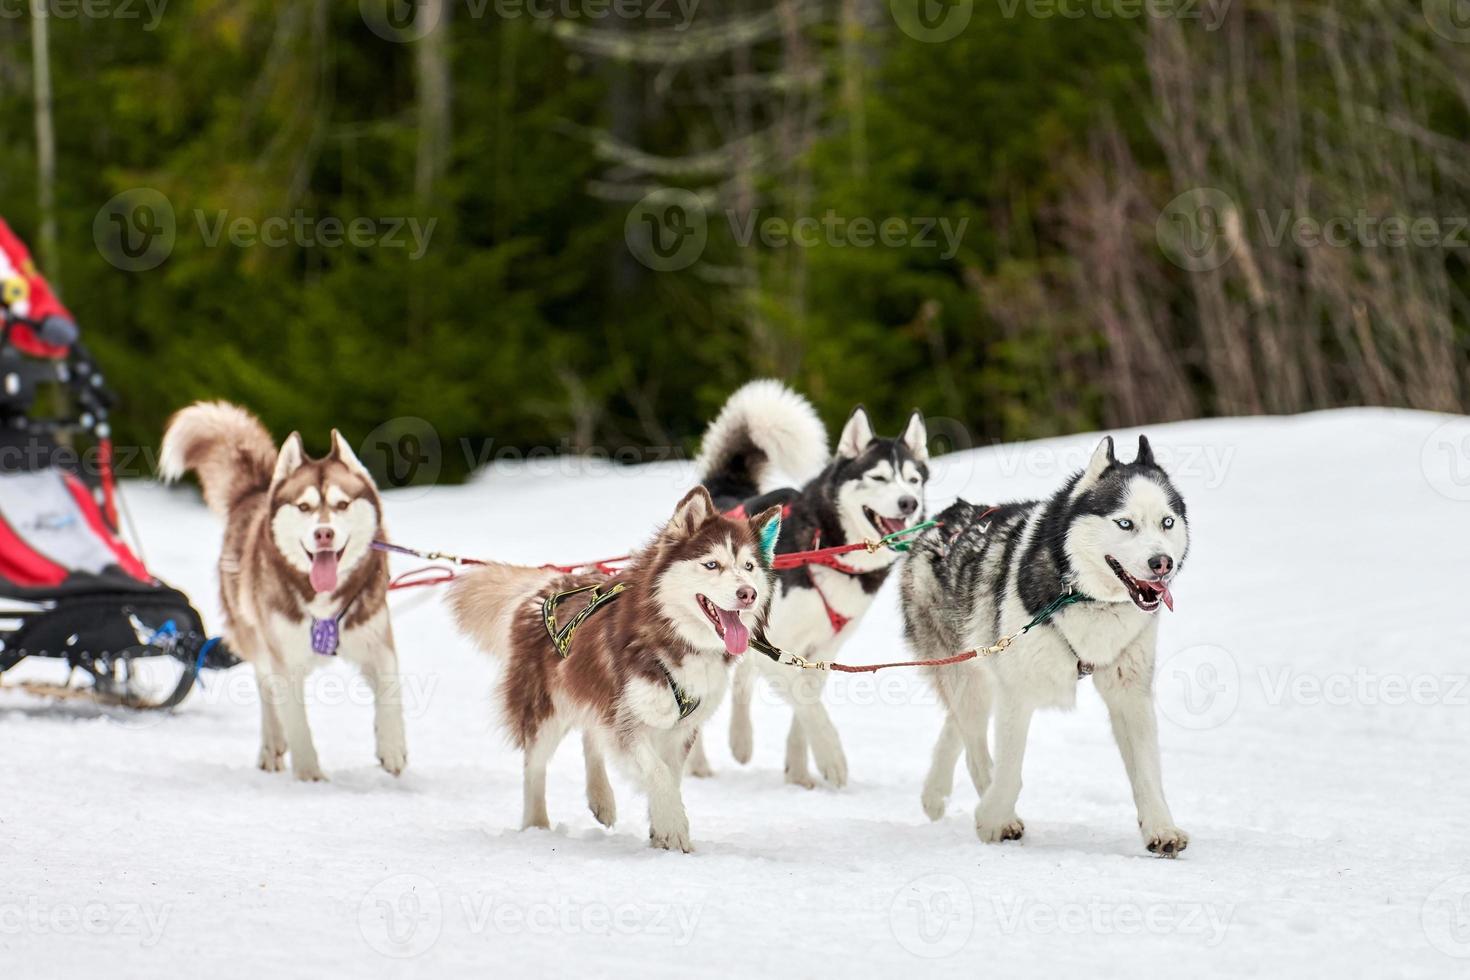 carreras de perros de trineo husky foto